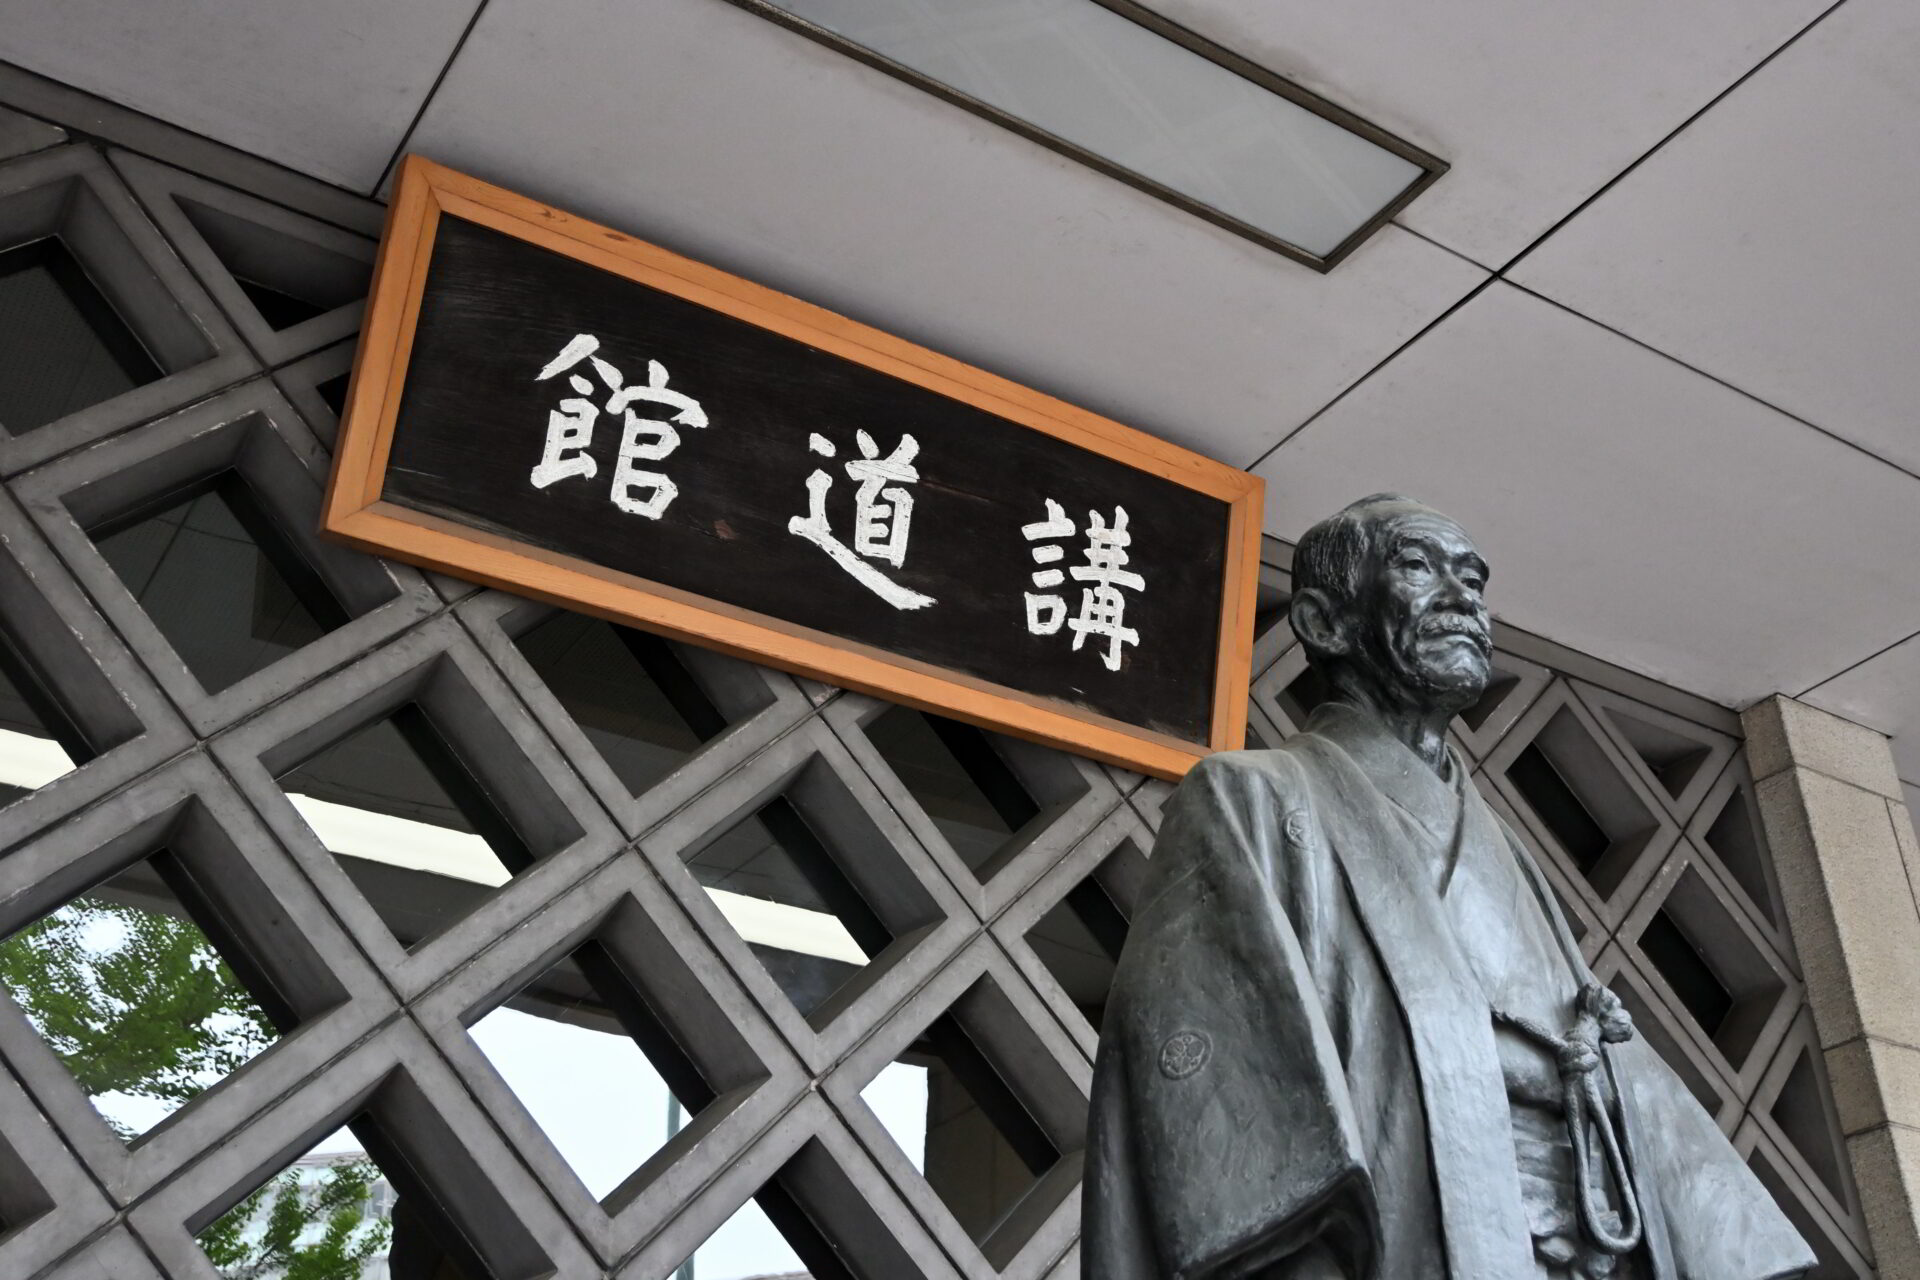 柔道の創始者・嘉納治五郎師範の銅像と発祥の地・講道館の看板-Journal-ONE撮影